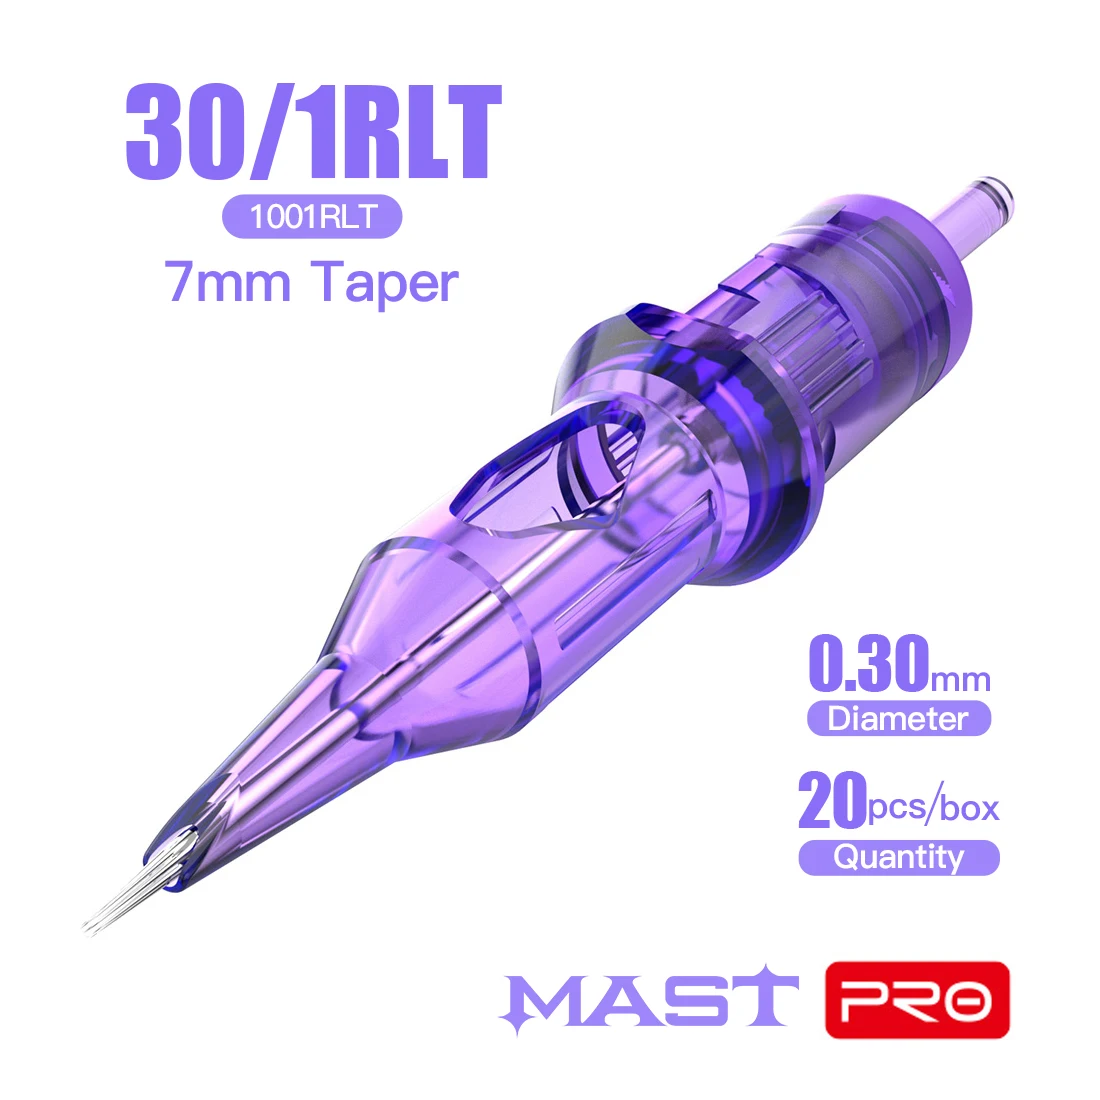 Mast Tattoo PRO RLT 08/10/12 Taper 7mm Sterilized Tattoo Cartridge Needles Supply Makeup Permanent Round Liner 0.35/0.30/0.25mm